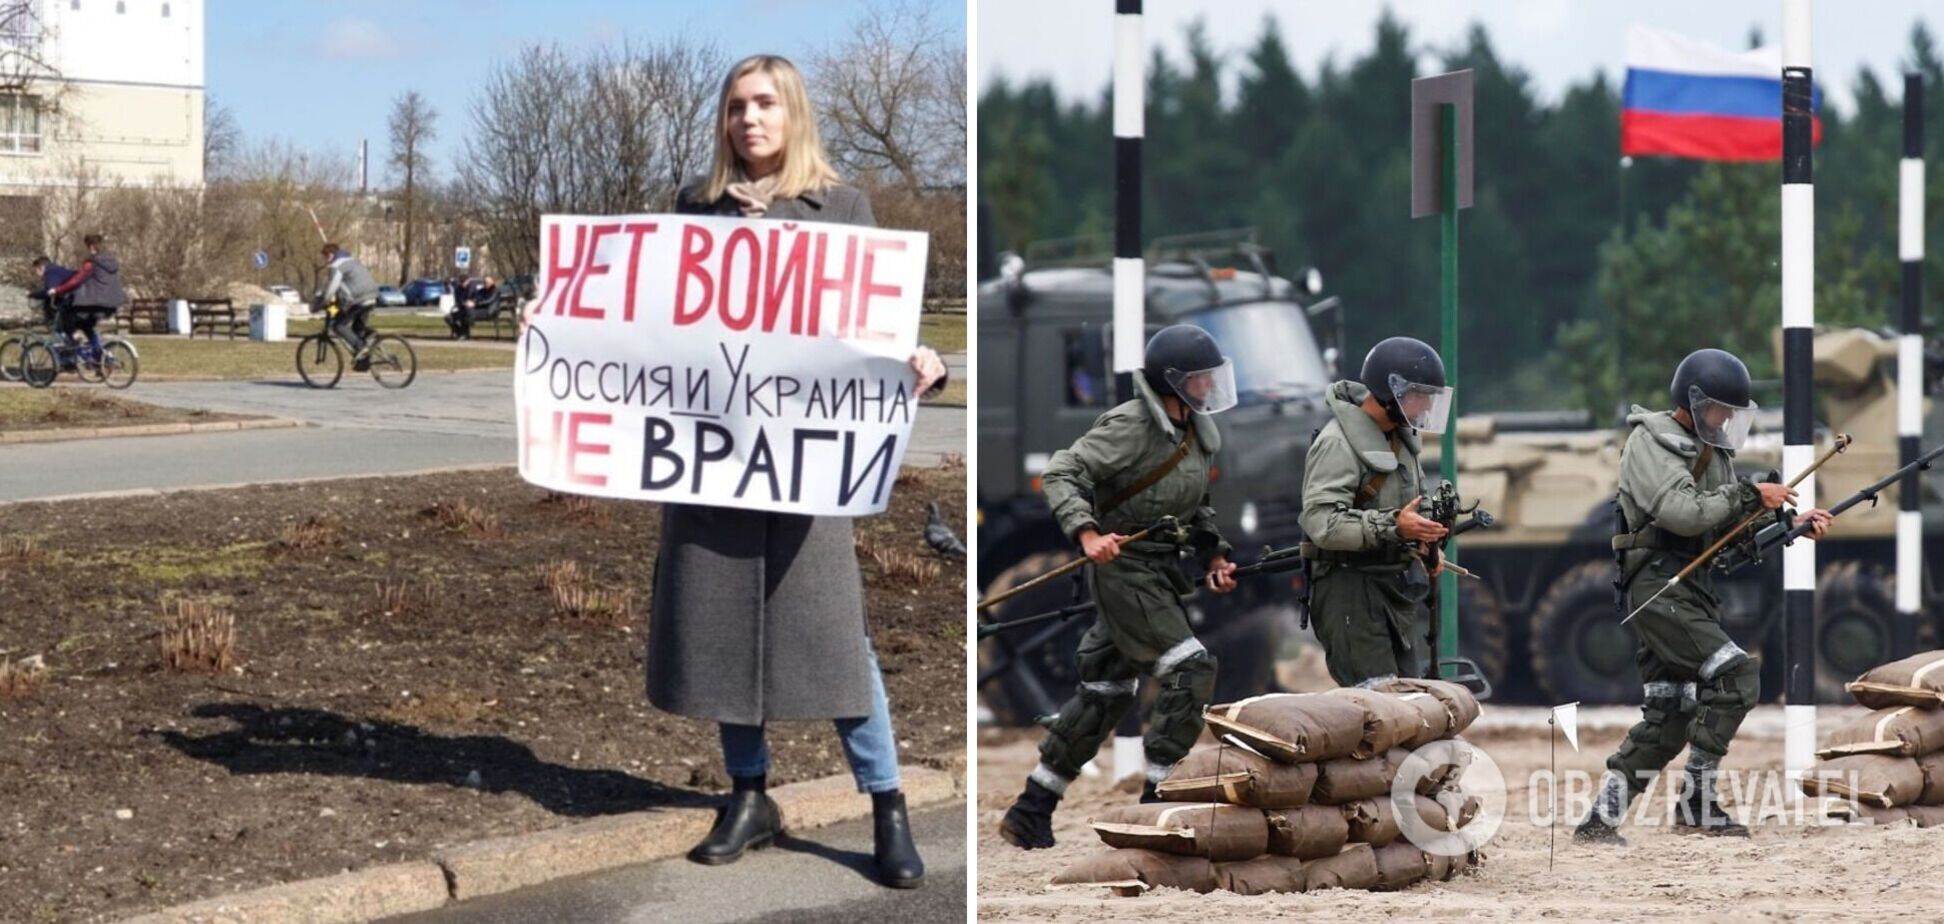 Настоящая информация о войне на украине. Против войны с Украиной. Прекратите войну на Украине. Россия Украина нет войне.